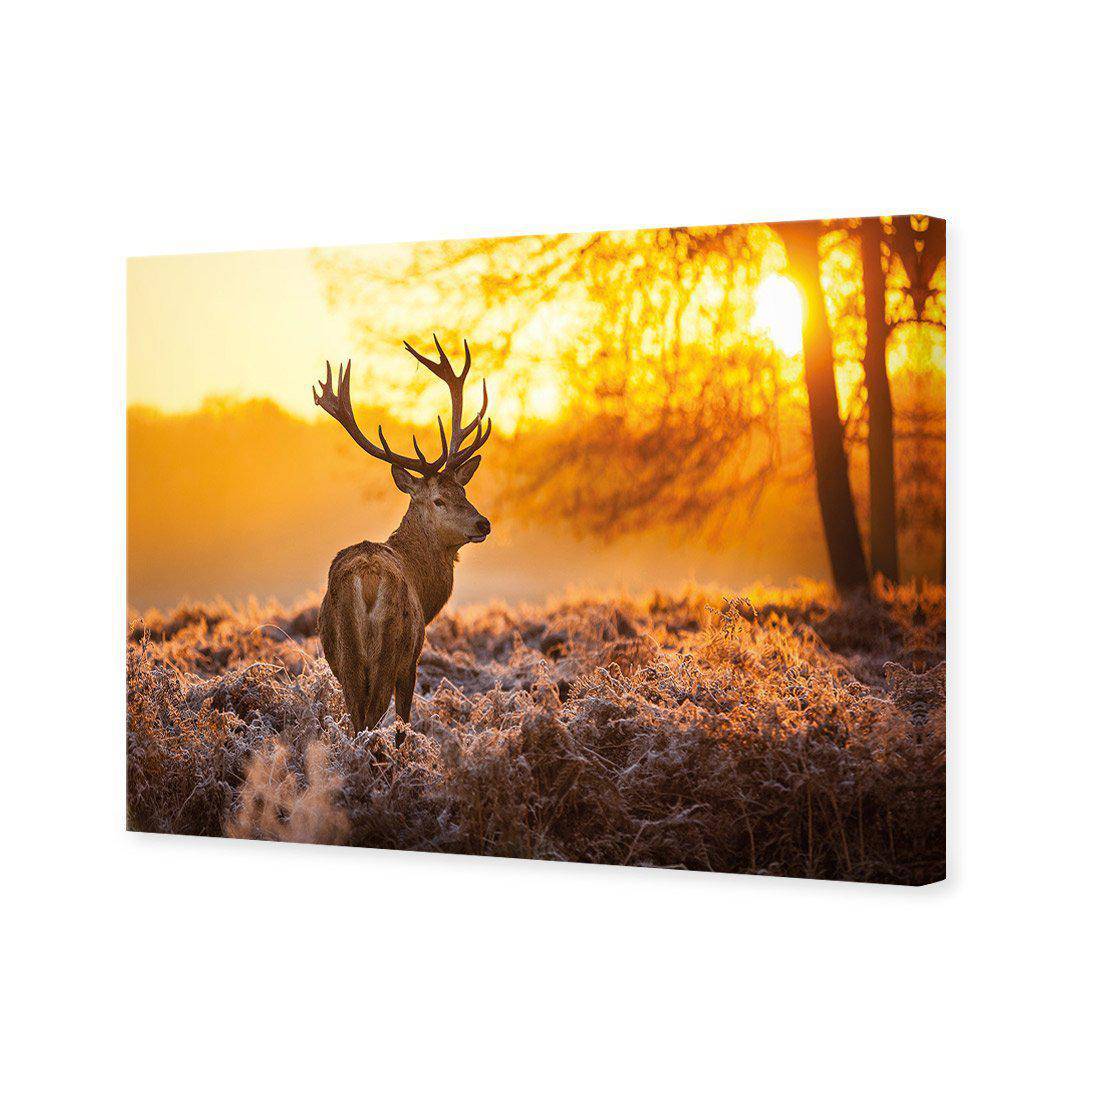 Sunset Deer Returns Canvas Art-Canvas-Wall Art Designs-45x30cm-Canvas - No Frame-Wall Art Designs